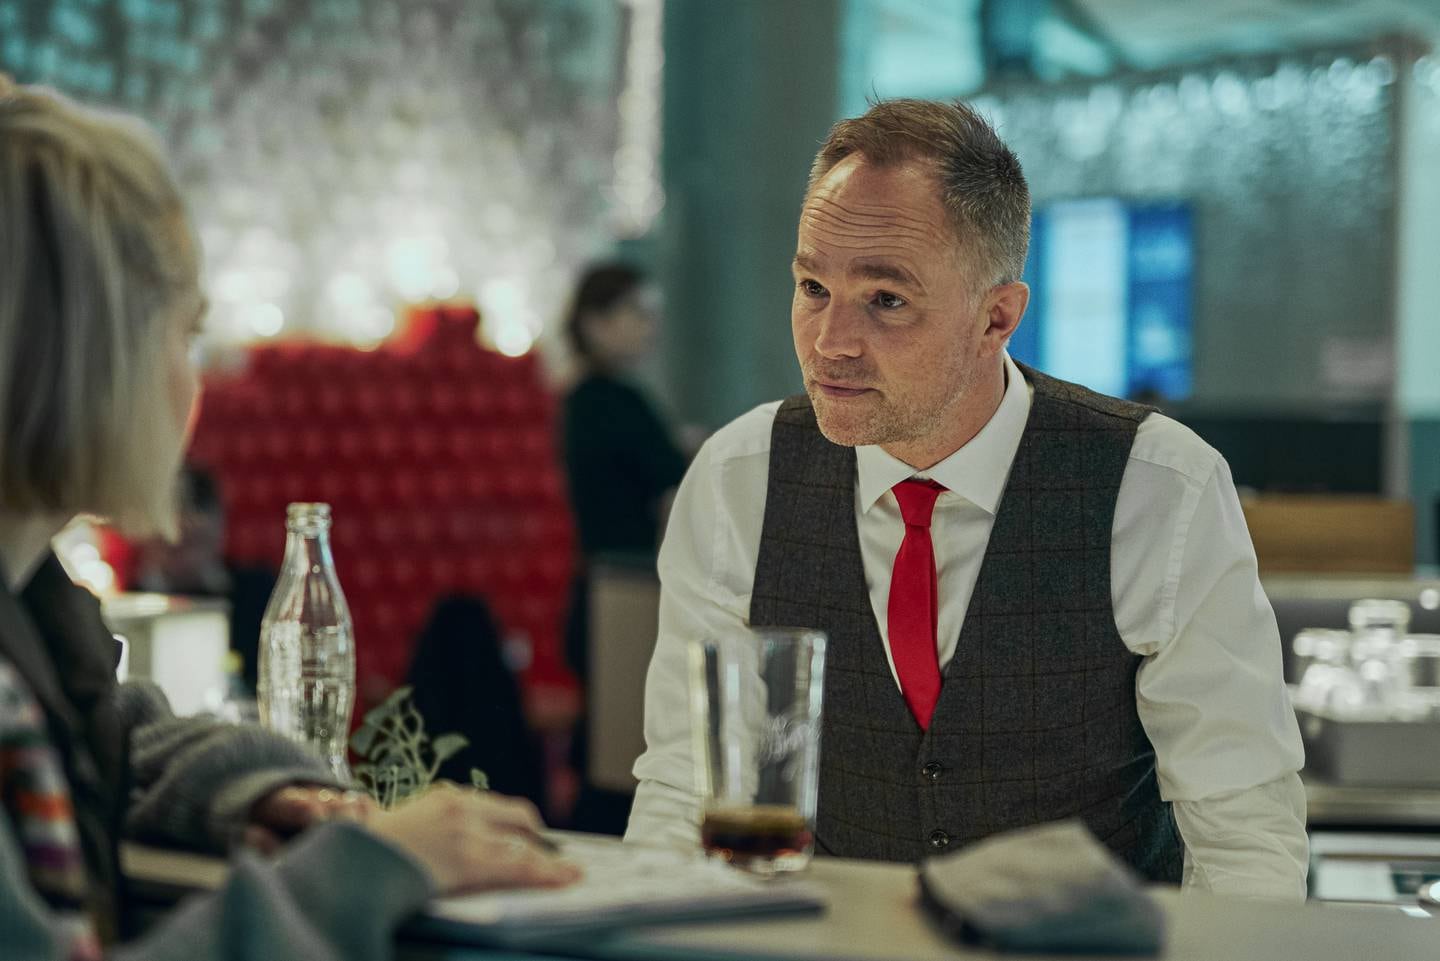 Jon Øigarden gjør en sterk rolle i juleserien "Julestorm", som bartenderen Marius. Her med Thea Sofie Loch Næss.